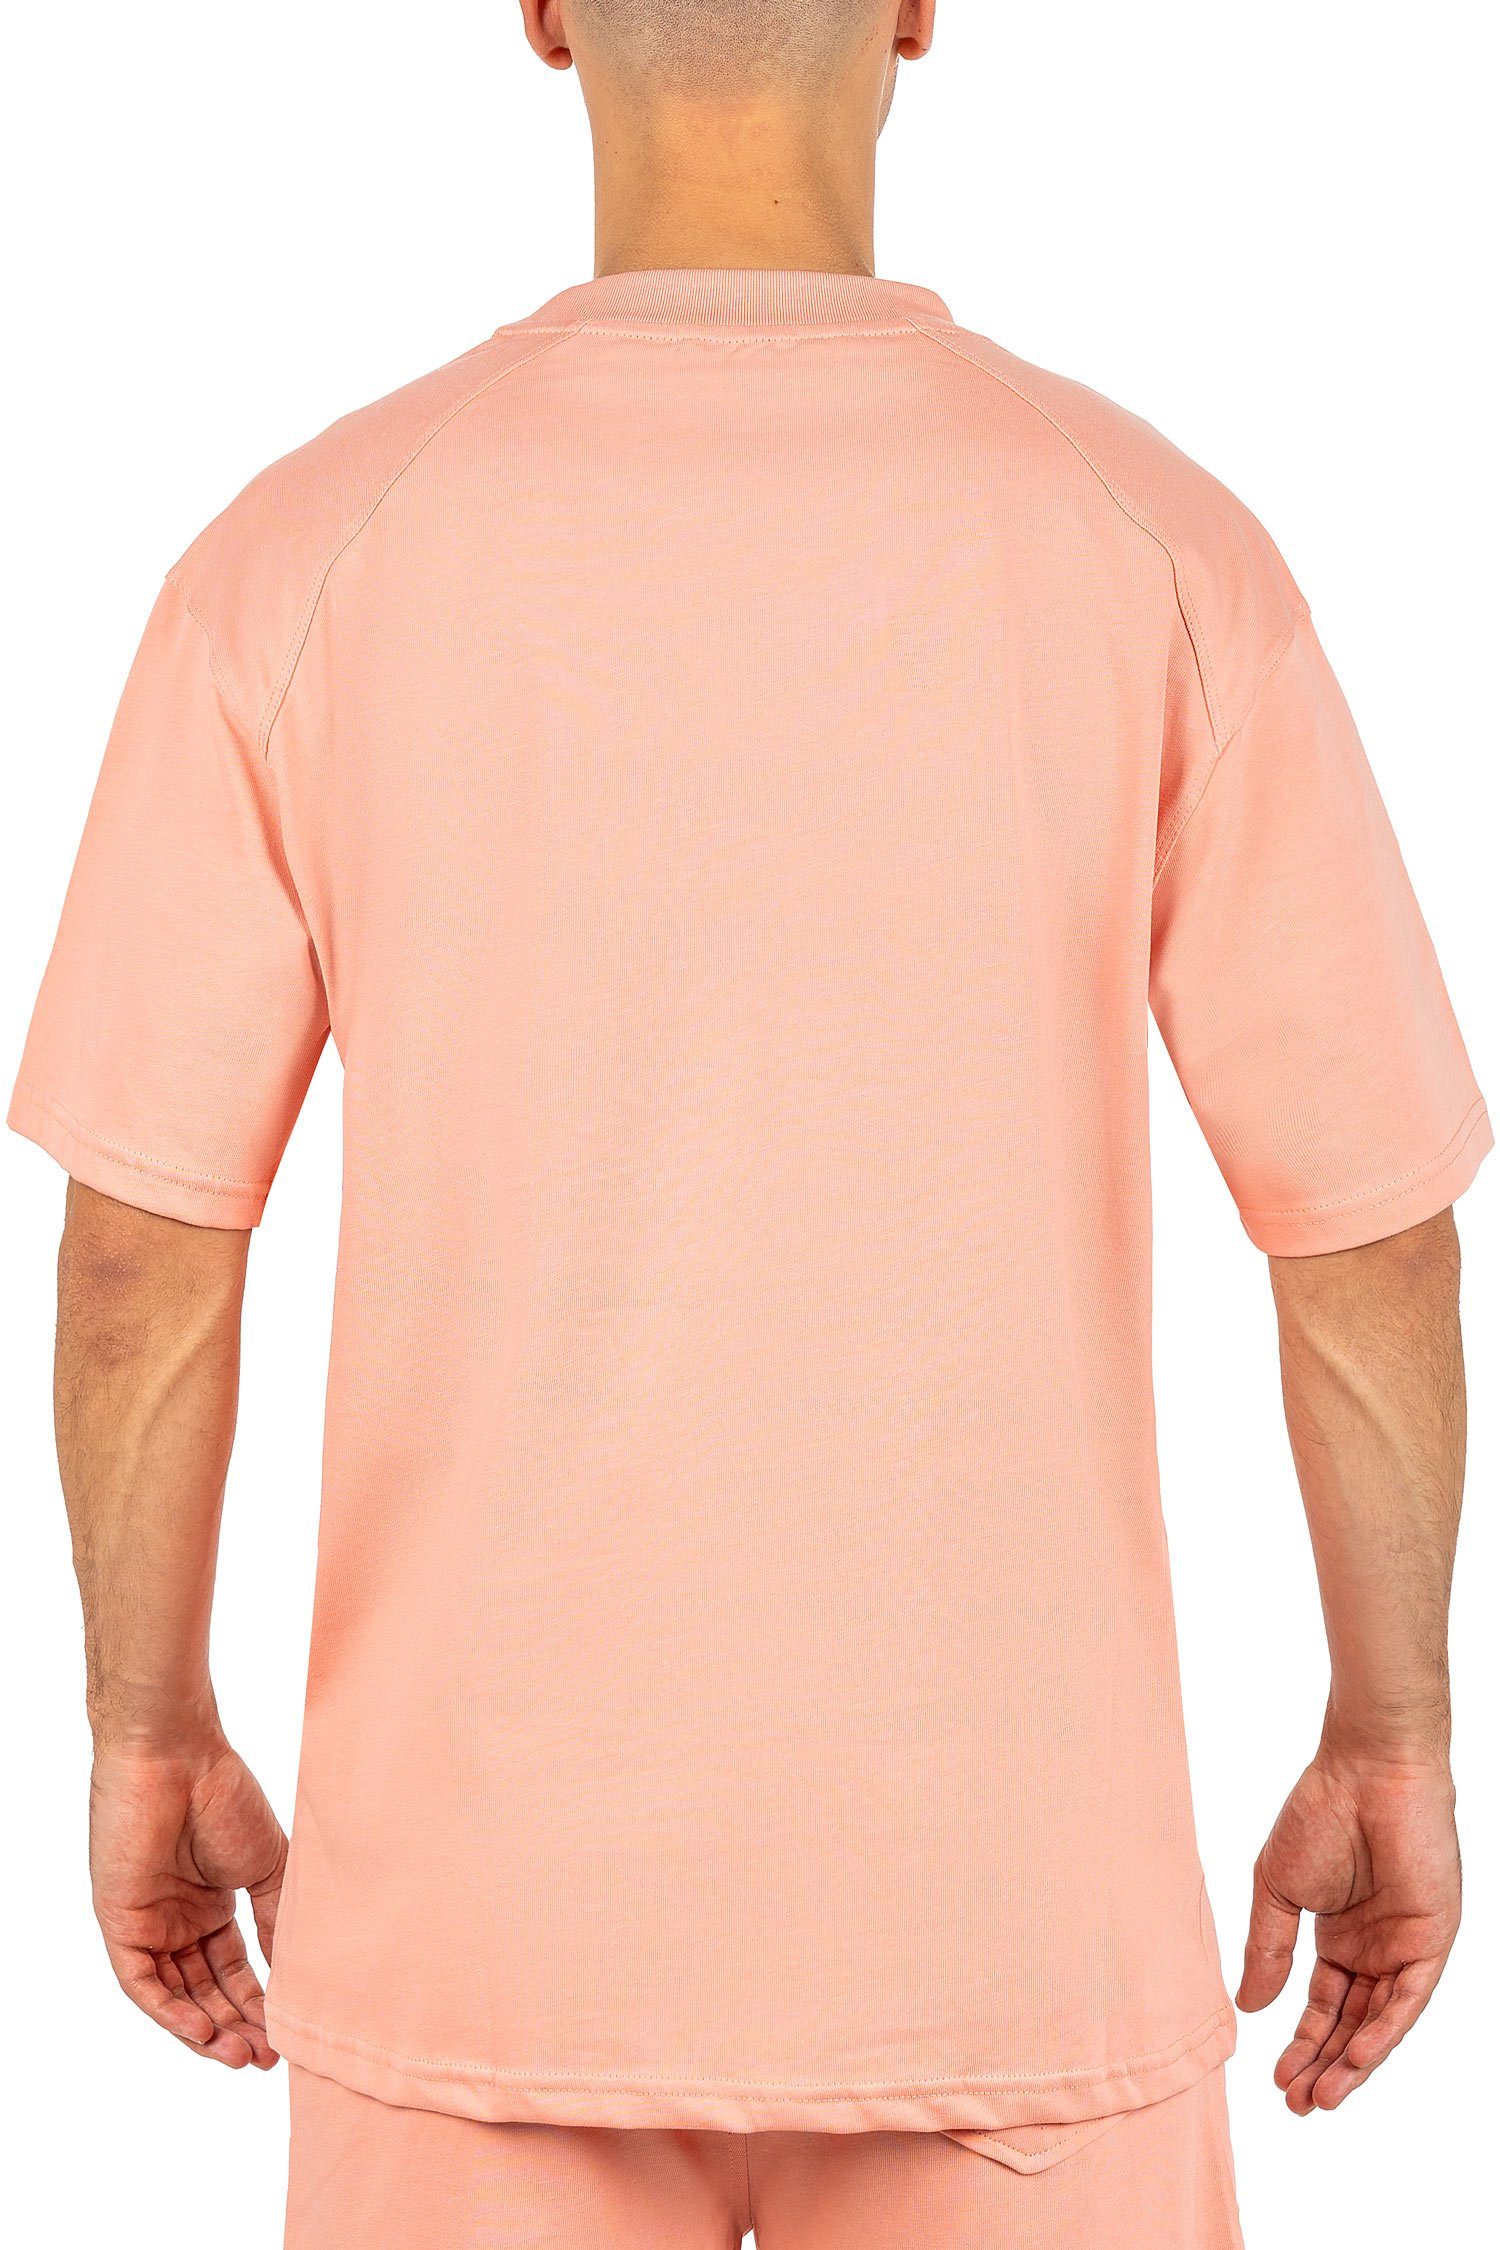 am T-shirt mit Pink Kragen Oversize-Shirt Reichstadt Casual Stitching Kurzarm 23RS041 (1-tlg)